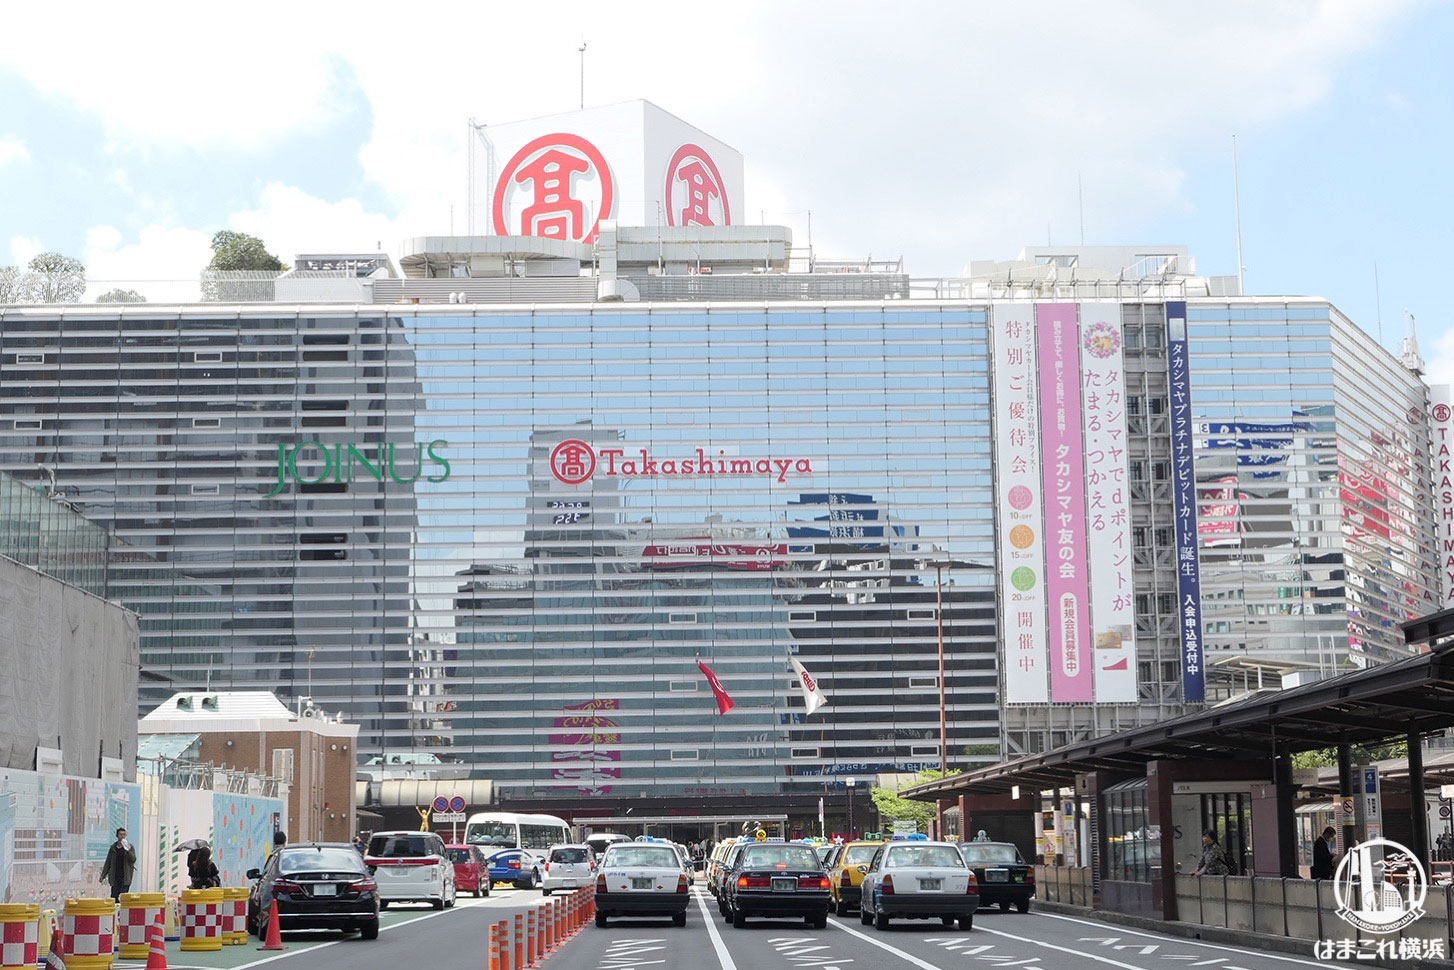 横浜高島屋、生活必需品を中心に営業範囲拡大 5月18日より